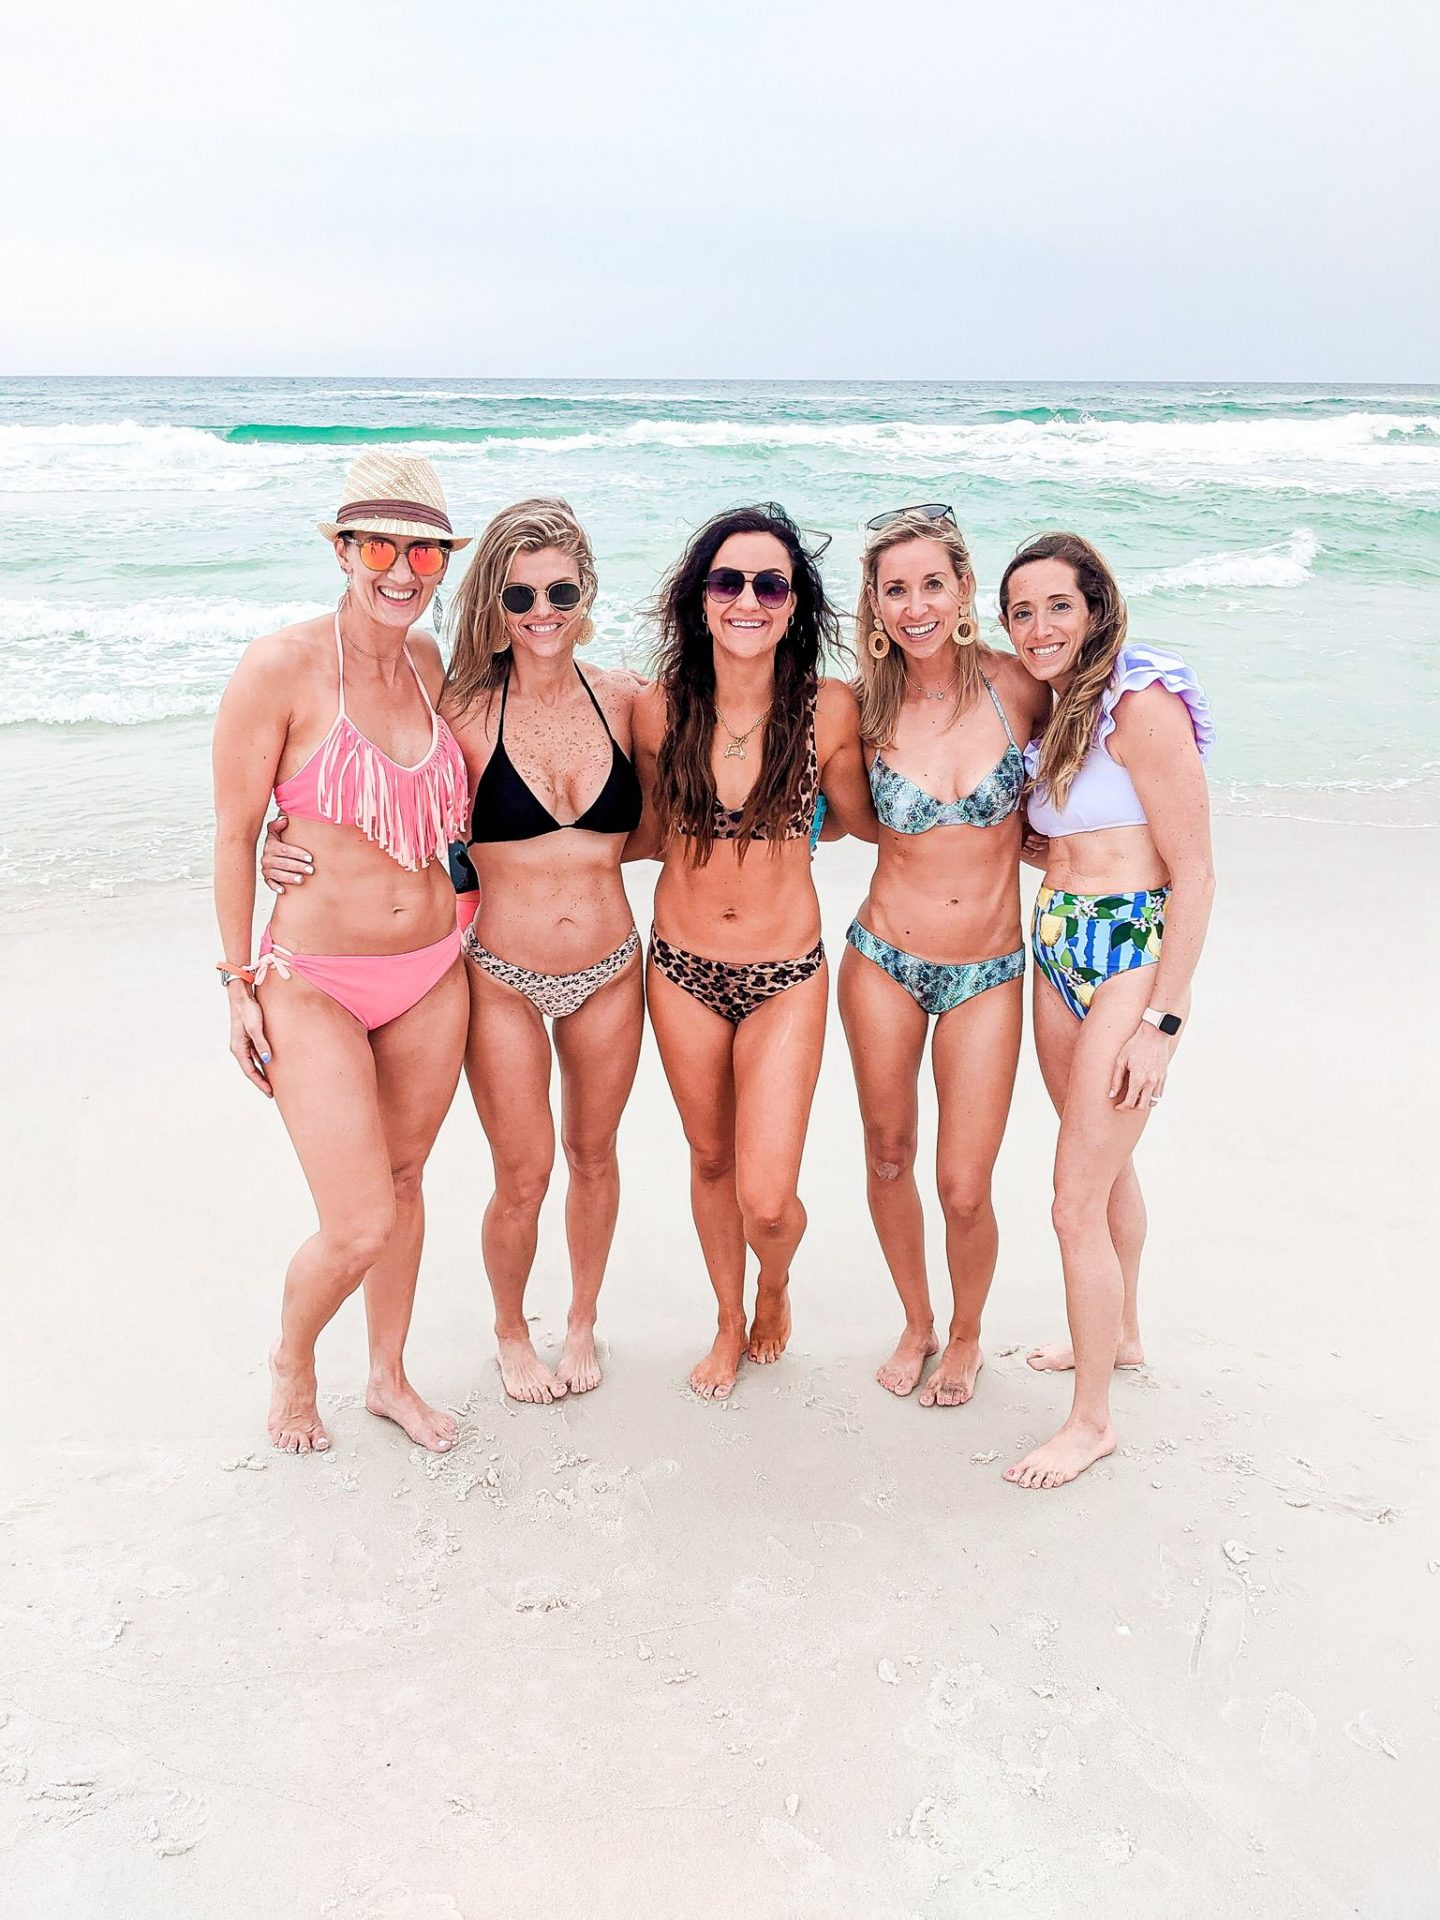 Girls at the beach, cute swimsuits, ocean photo